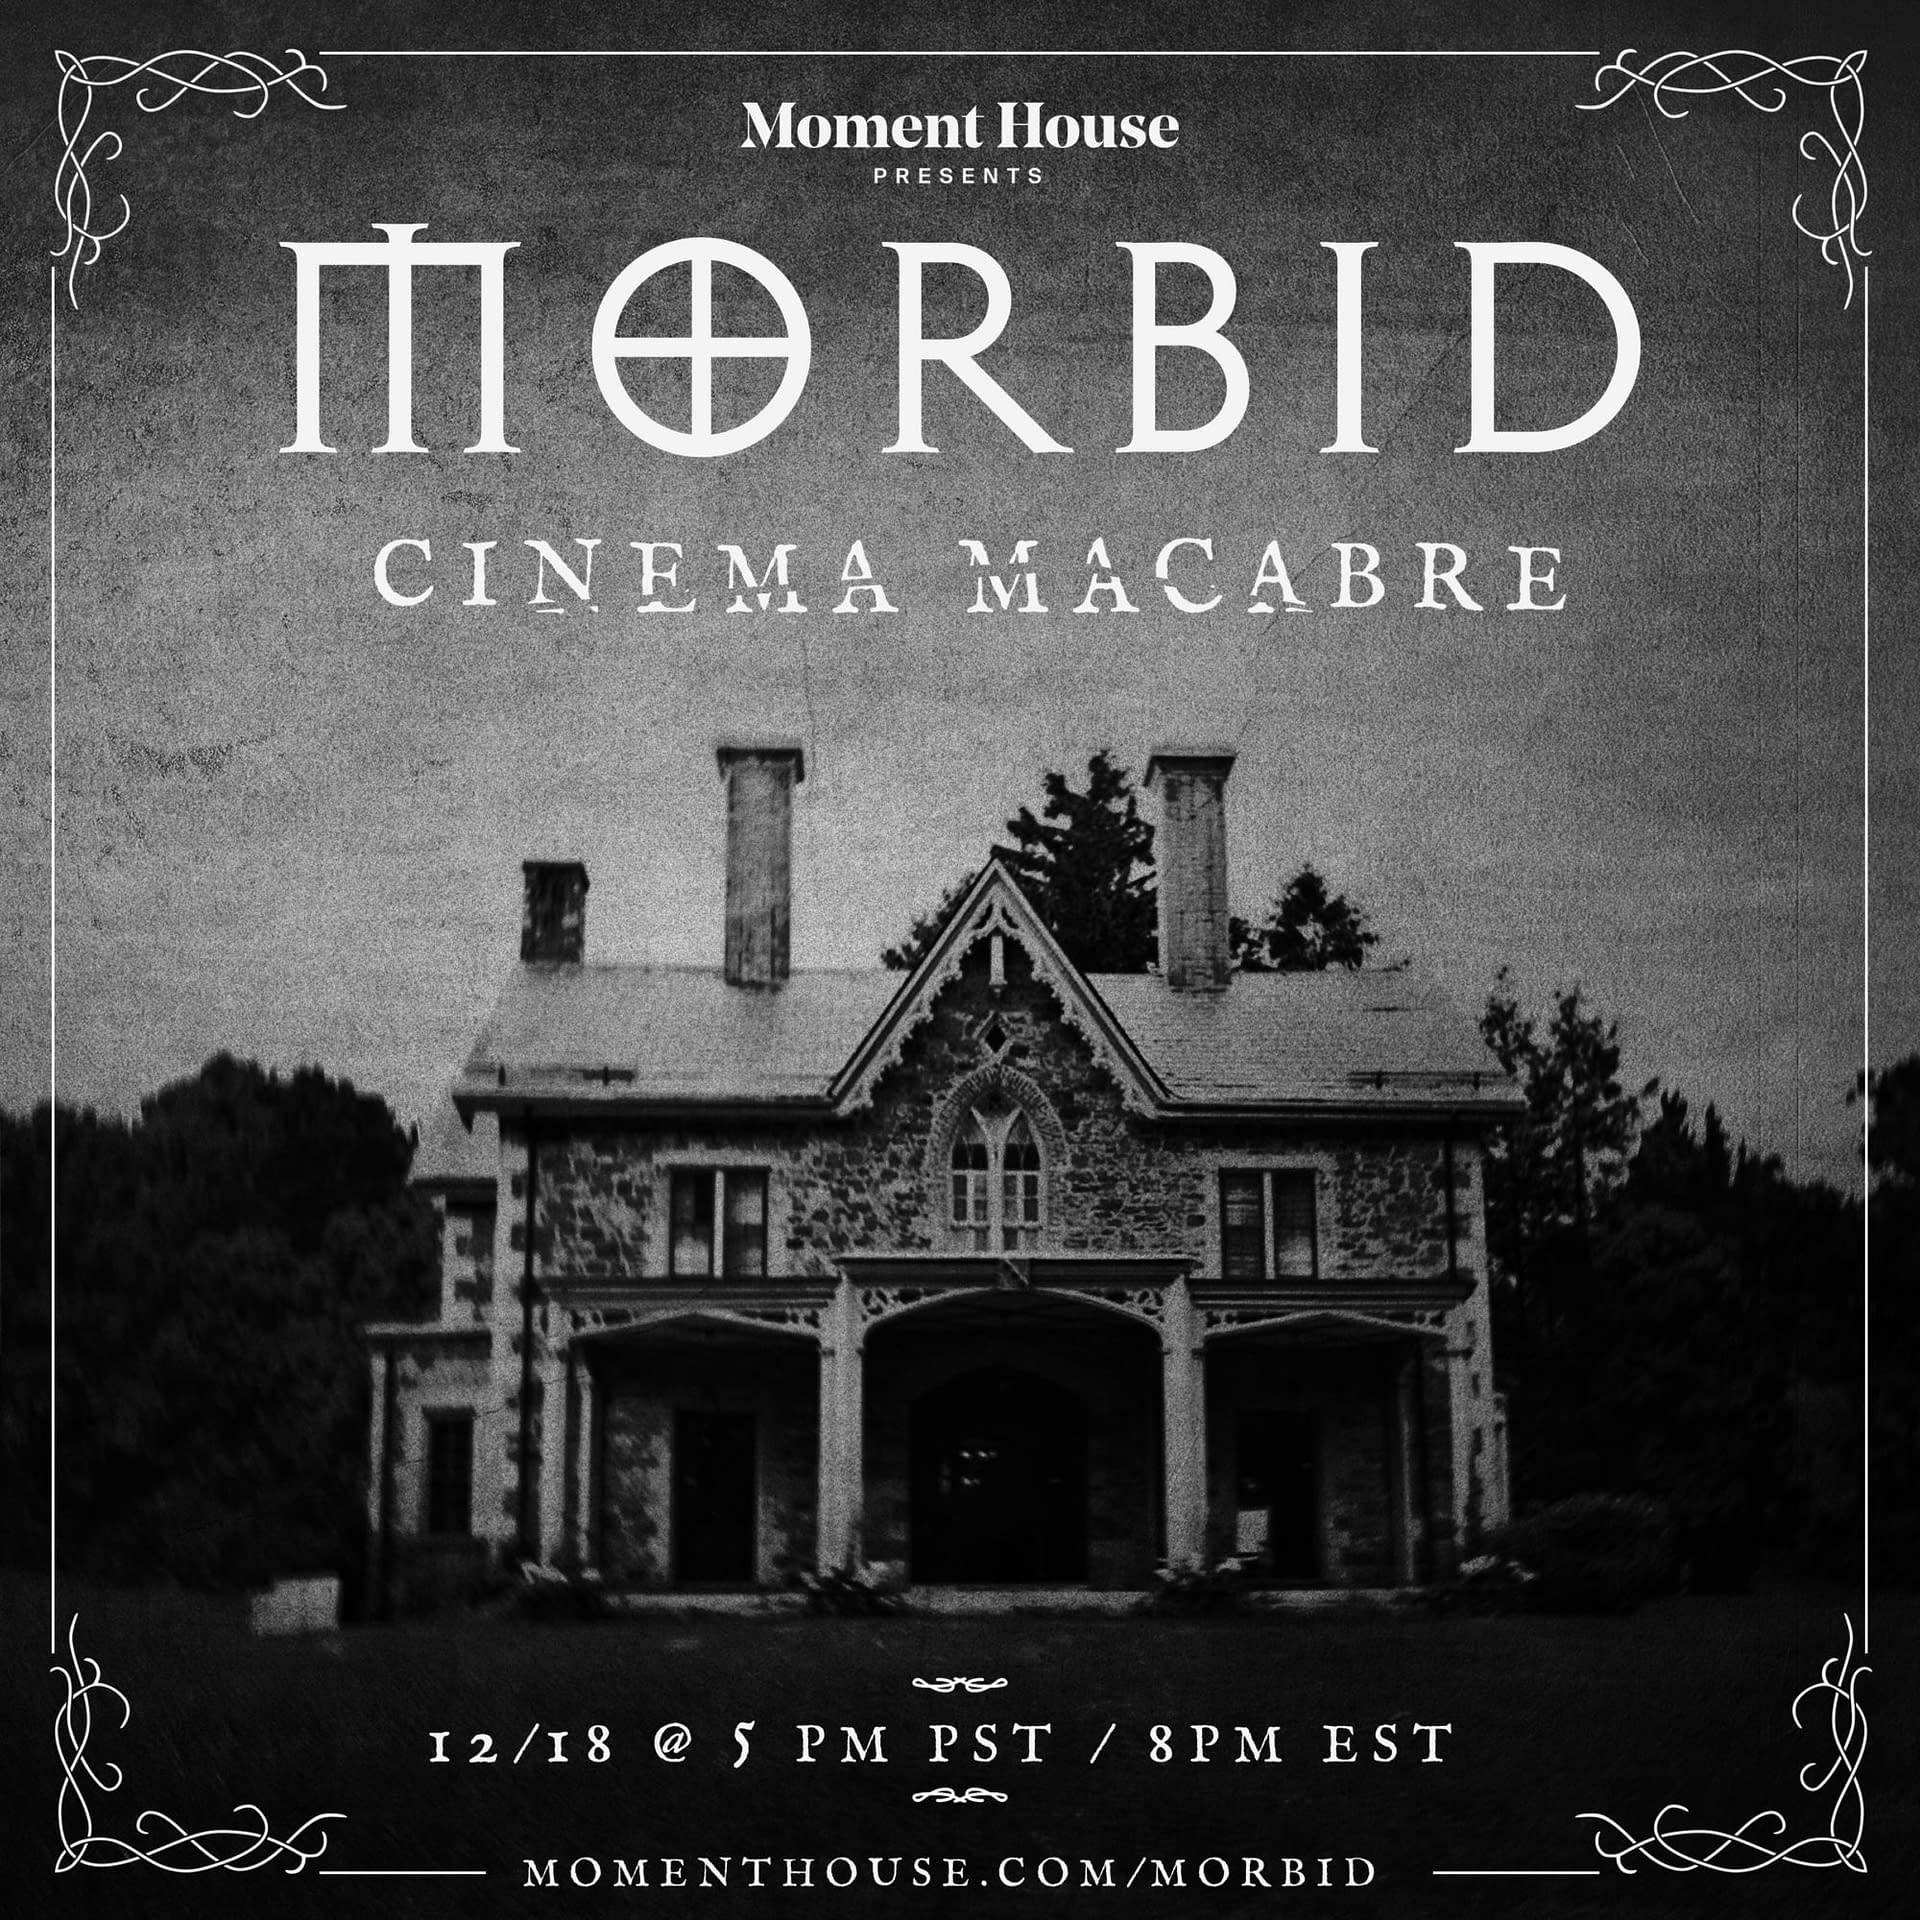 Morbid A True Crime Podcast Announces Cinema Macabre Digital Event